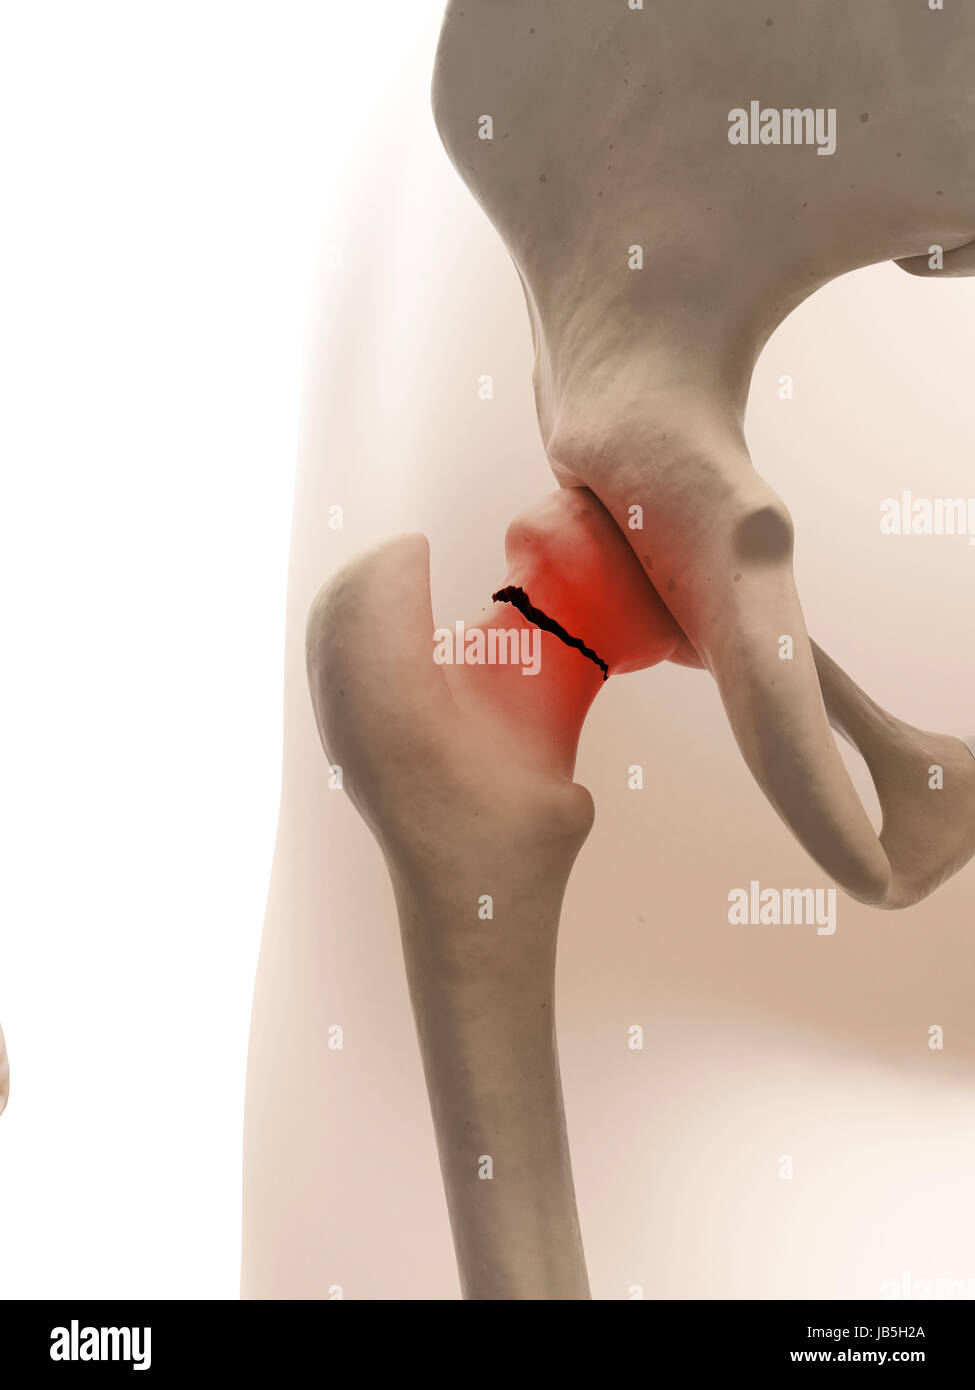 Illustrazione medica di anca rotto Foto Stock